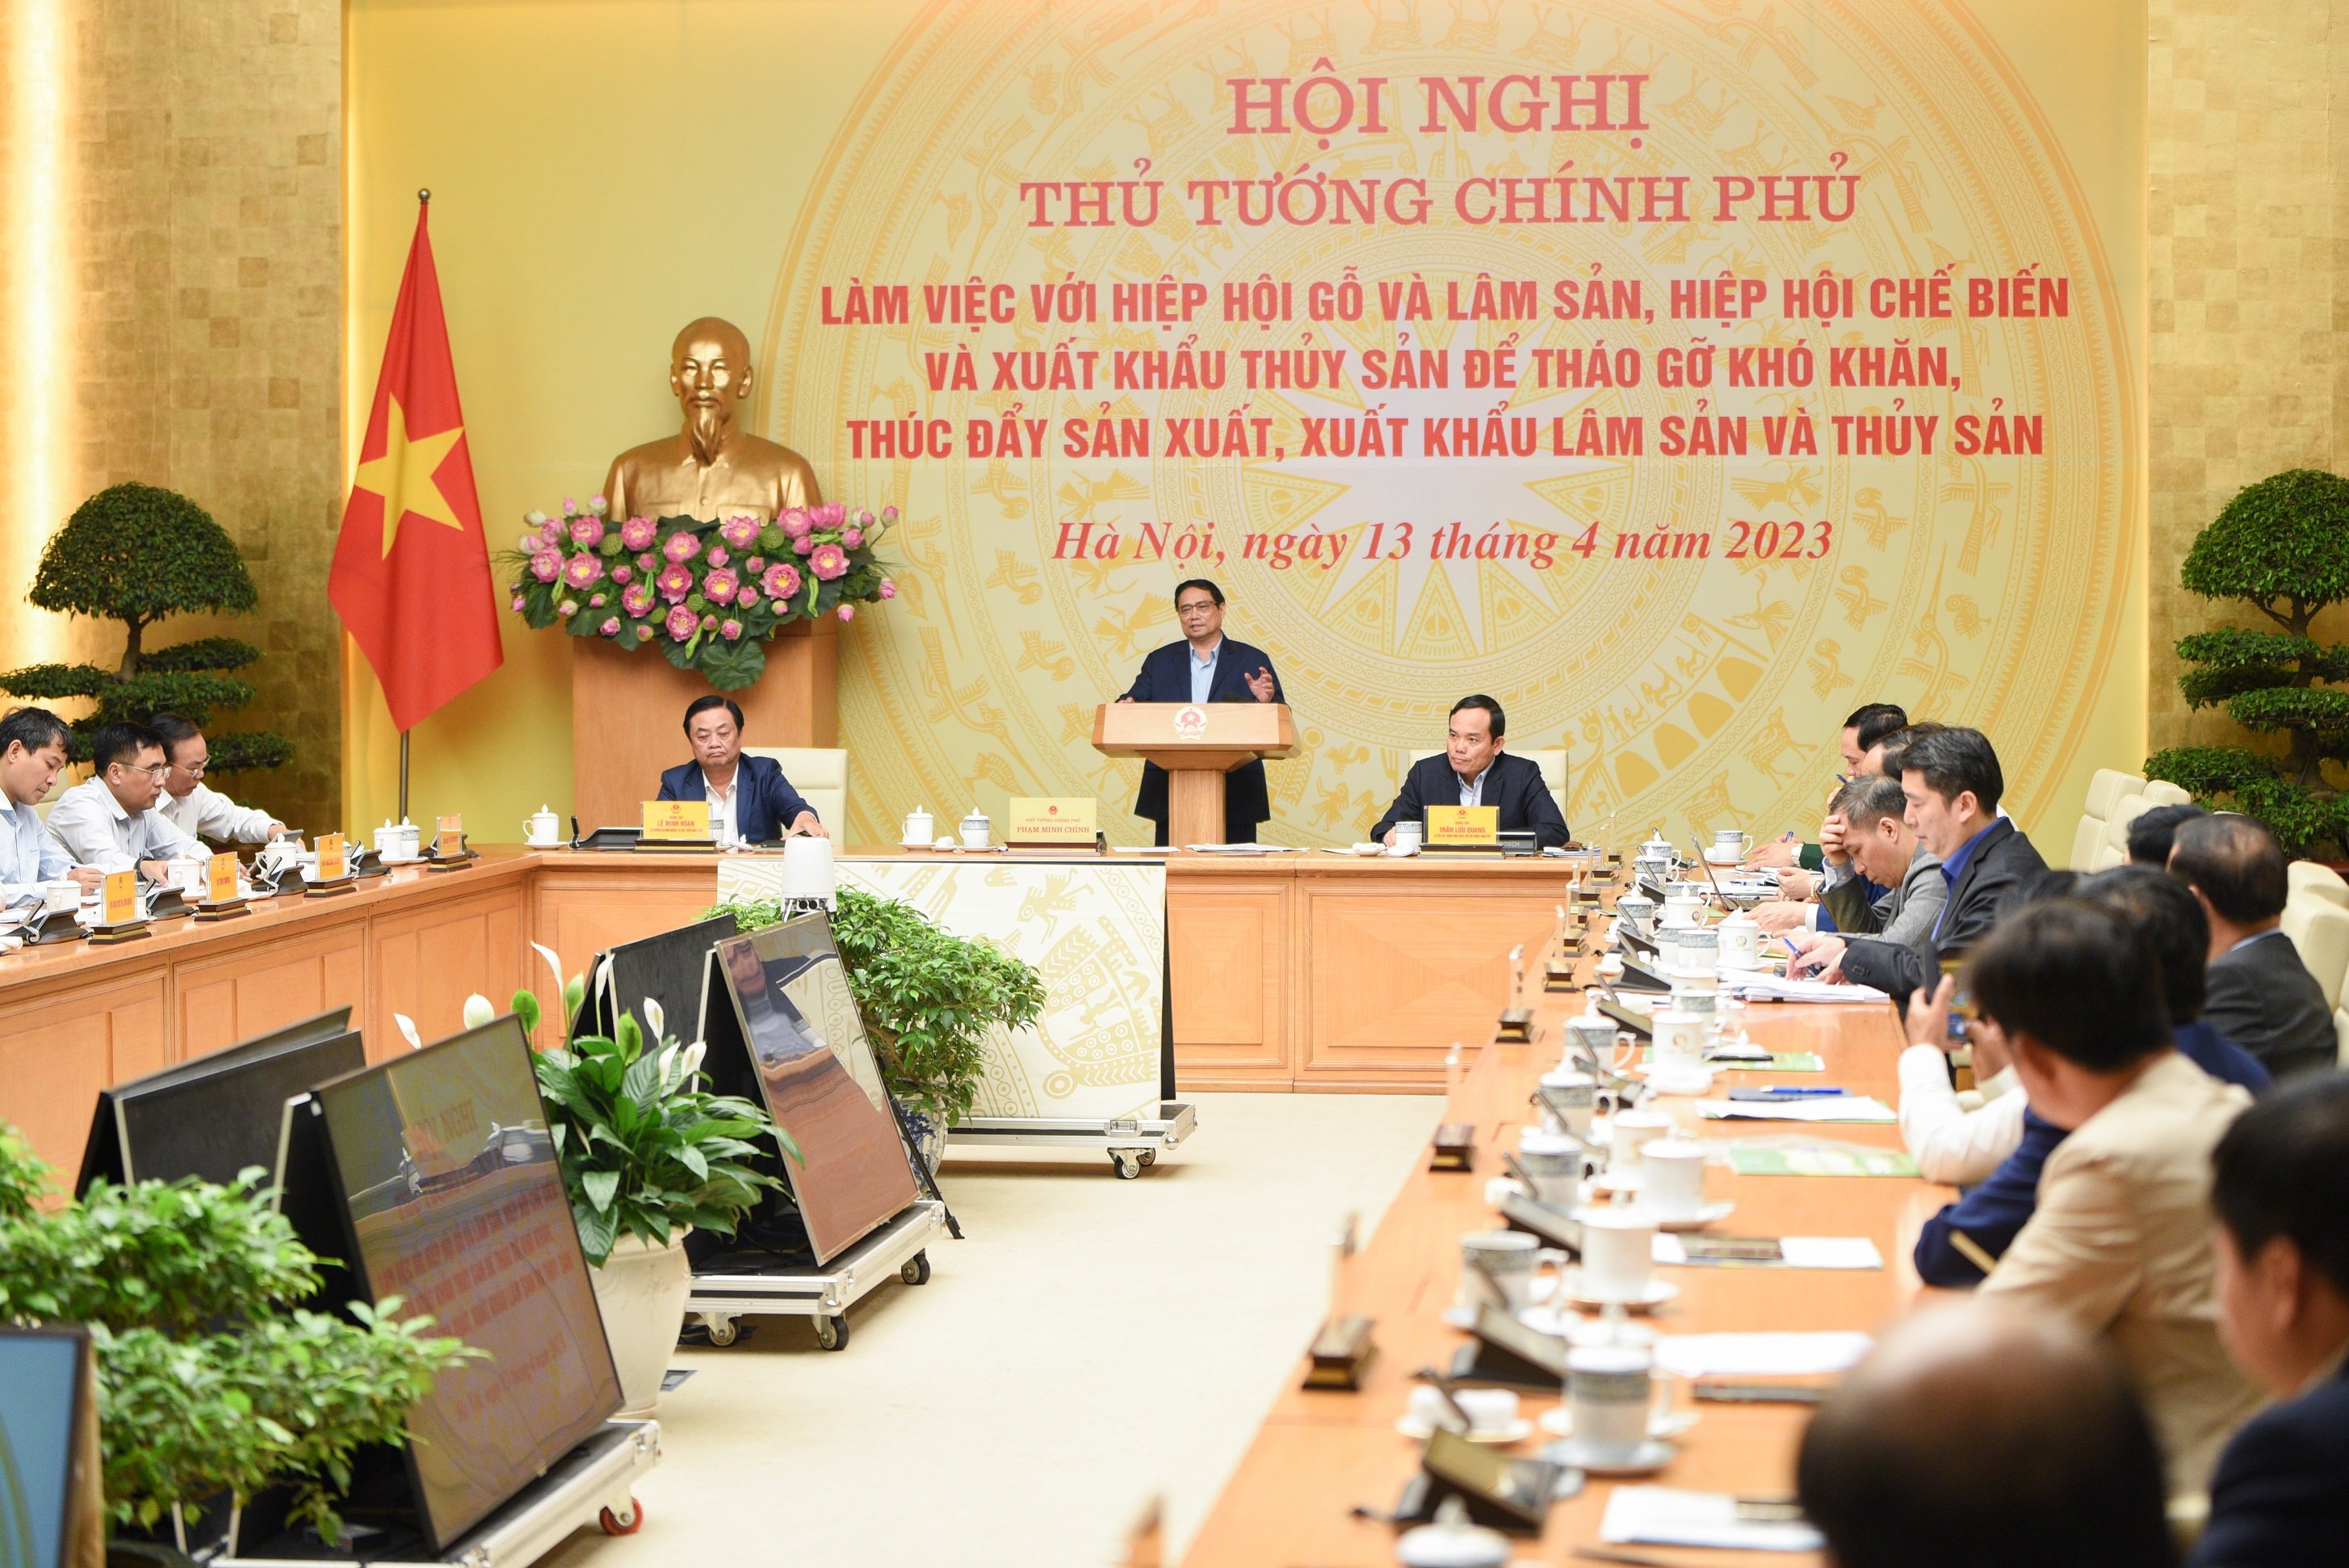 Thủ tướng chỉ đạo trong Hội nghị làm việc với Hiệp hội Gỗ và lâm sản, Hiệp hội Chế biến và Xuất khẩu thủy sản Việt Nam. Ảnh: Tùng Đinh.